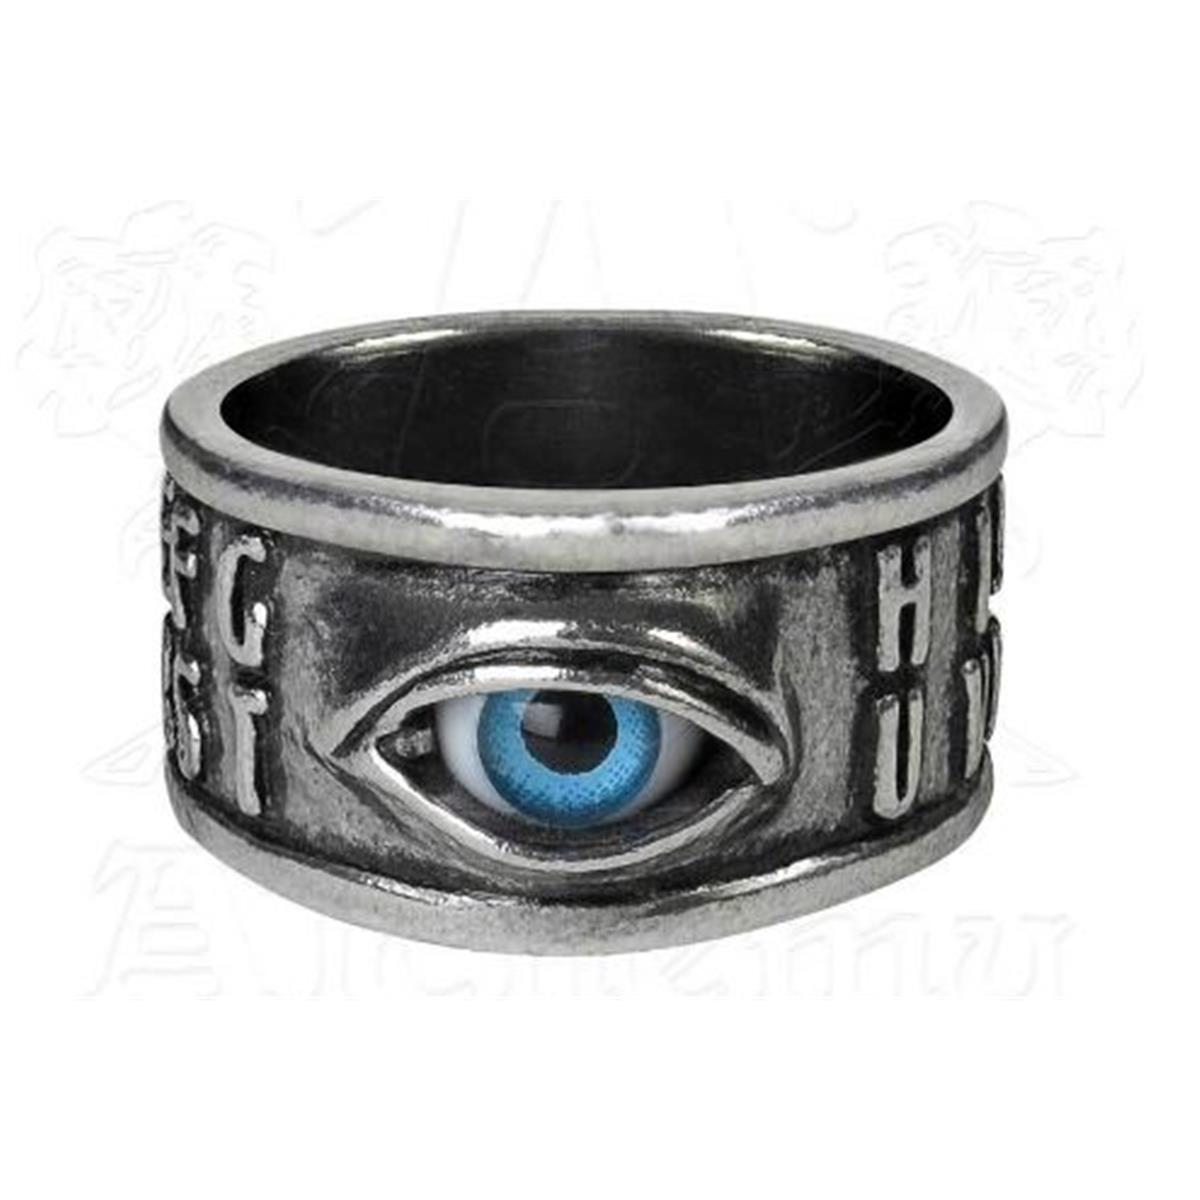 R215t Ouija Eye Ring - Size T